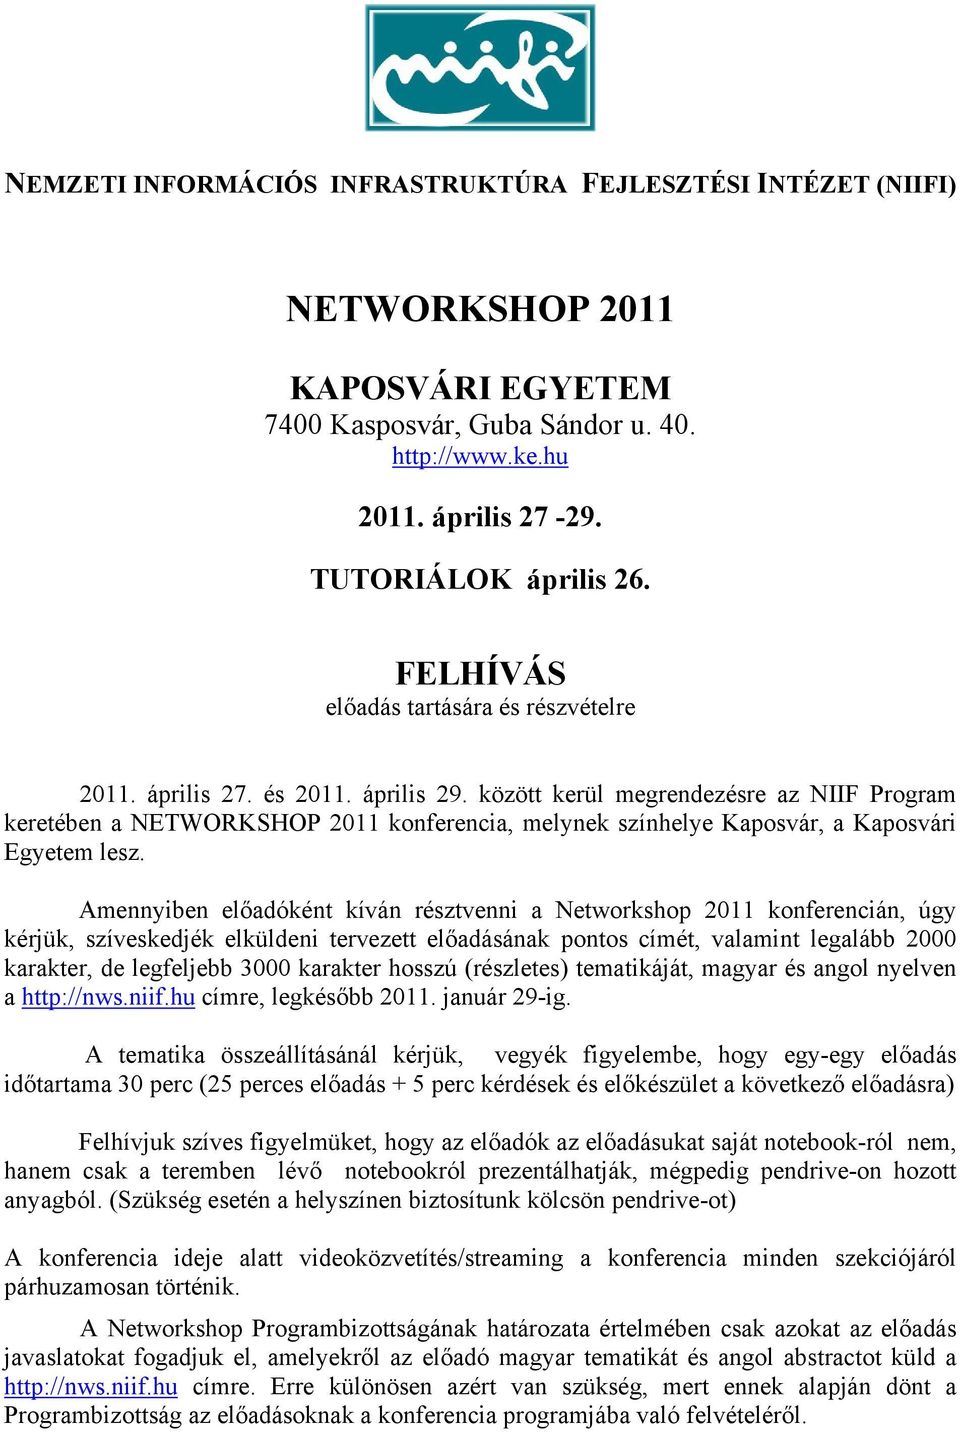 között kerül megrendezésre az NIIF Program keretében a NETWORKSHOP 2011 konferencia, melynek színhelye Kaposvár, a Kaposvári Egyetem lesz.